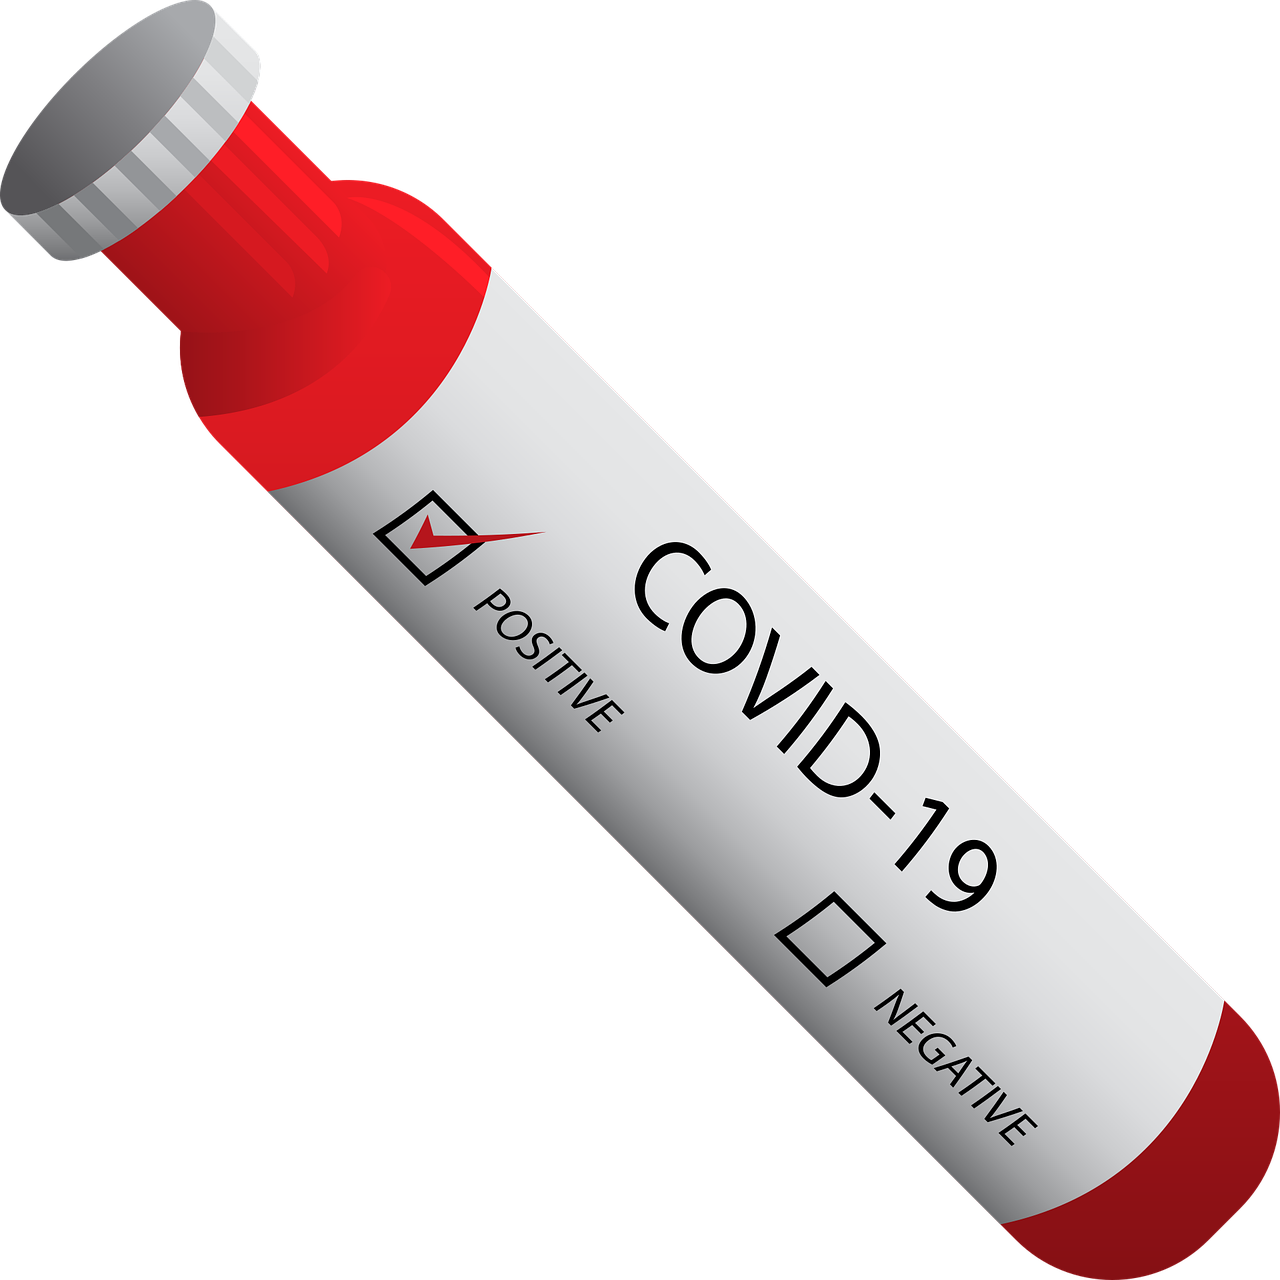 Nuovo coronavirus, positivi al COVID-19